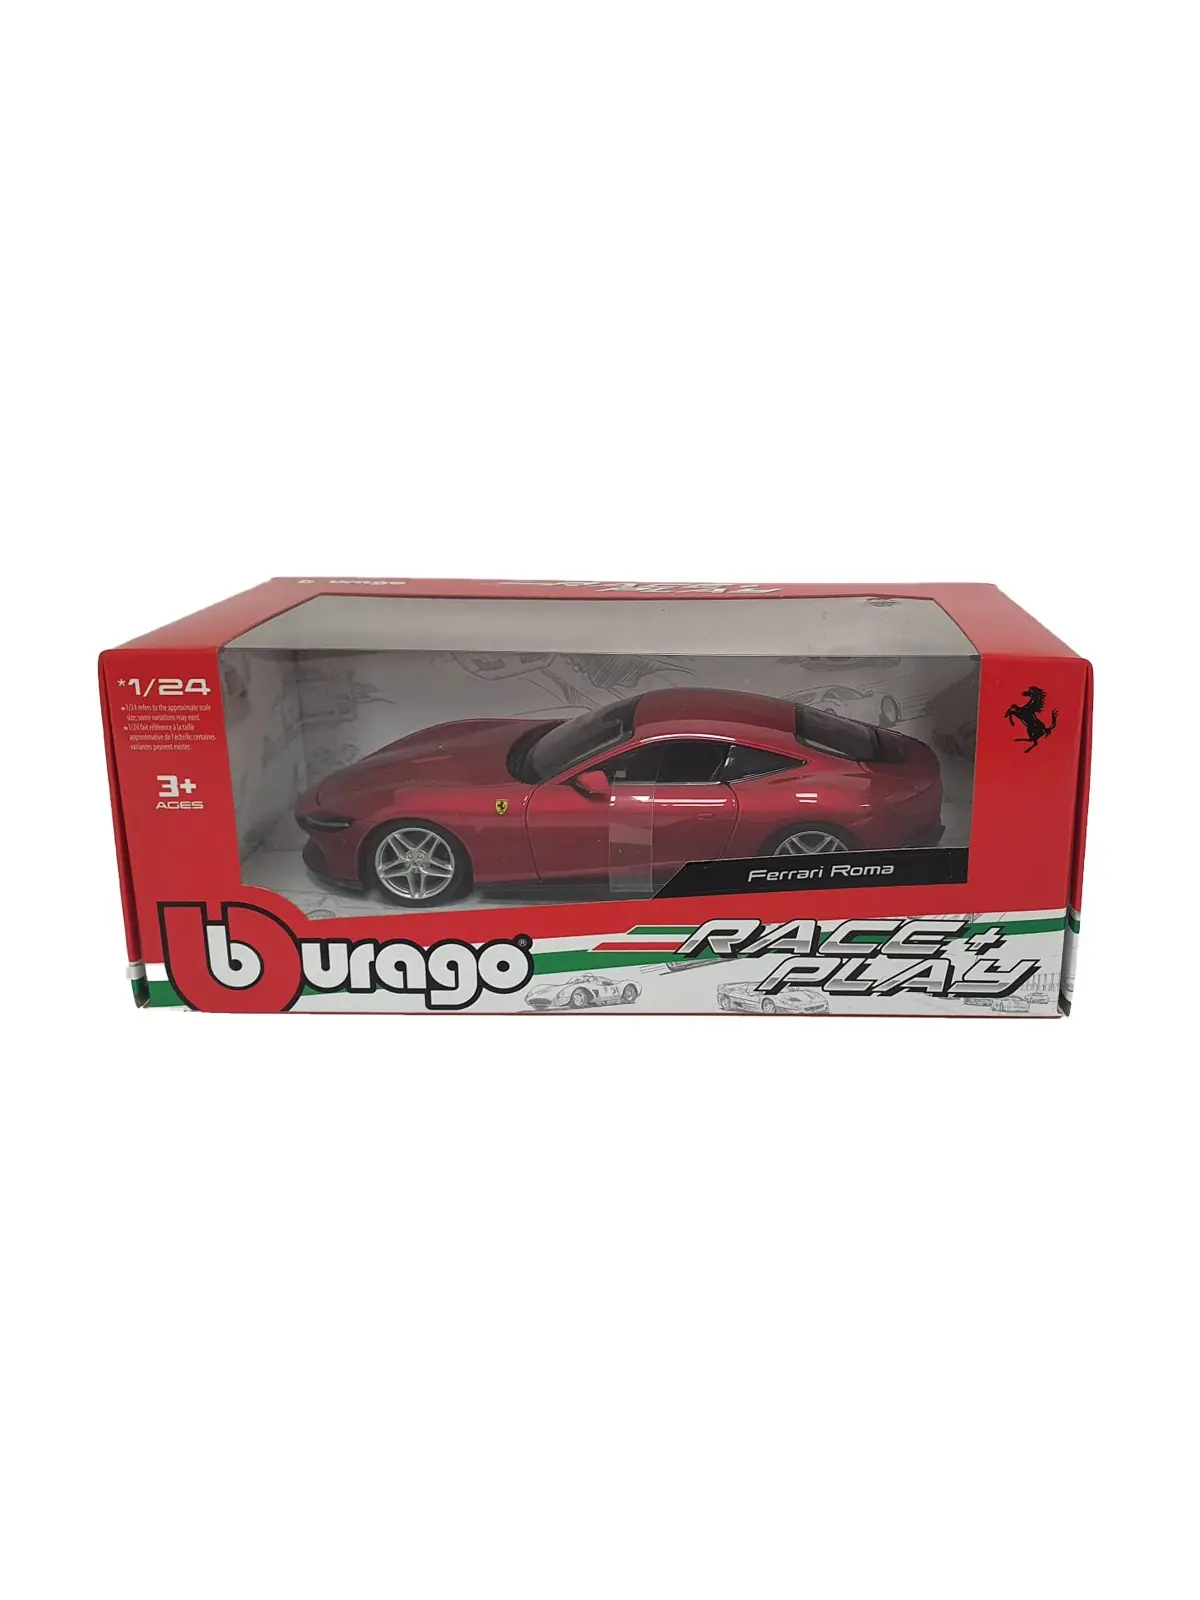 Burago R&P Ferrari Roma Scala 1/24